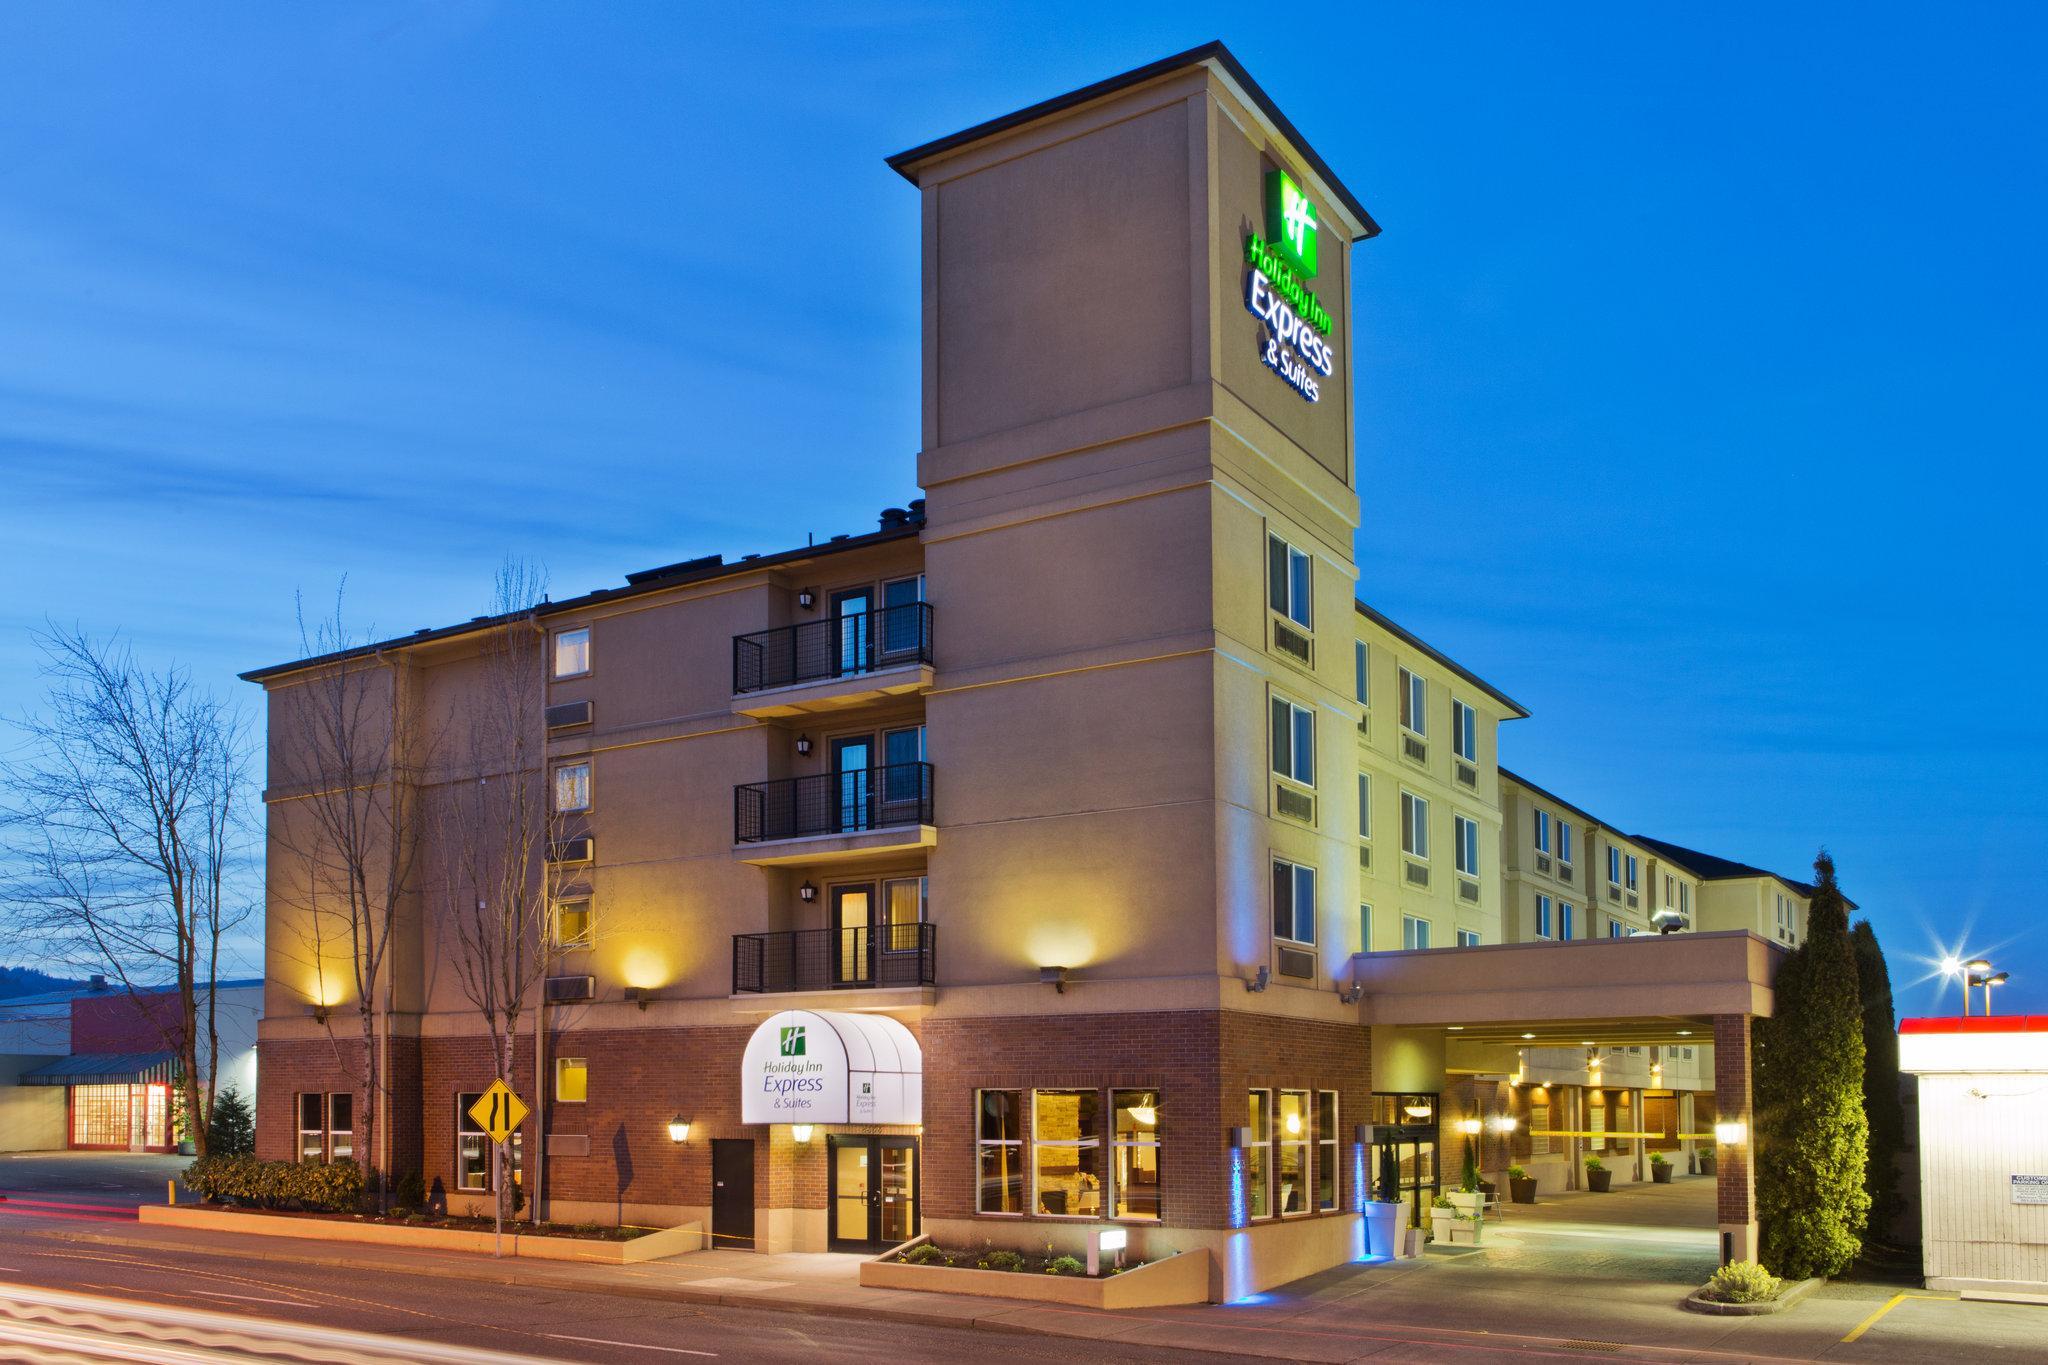 Buchen Sie Ihr Hotel In Portland Oregon Bis Zu 30 Gunstiger